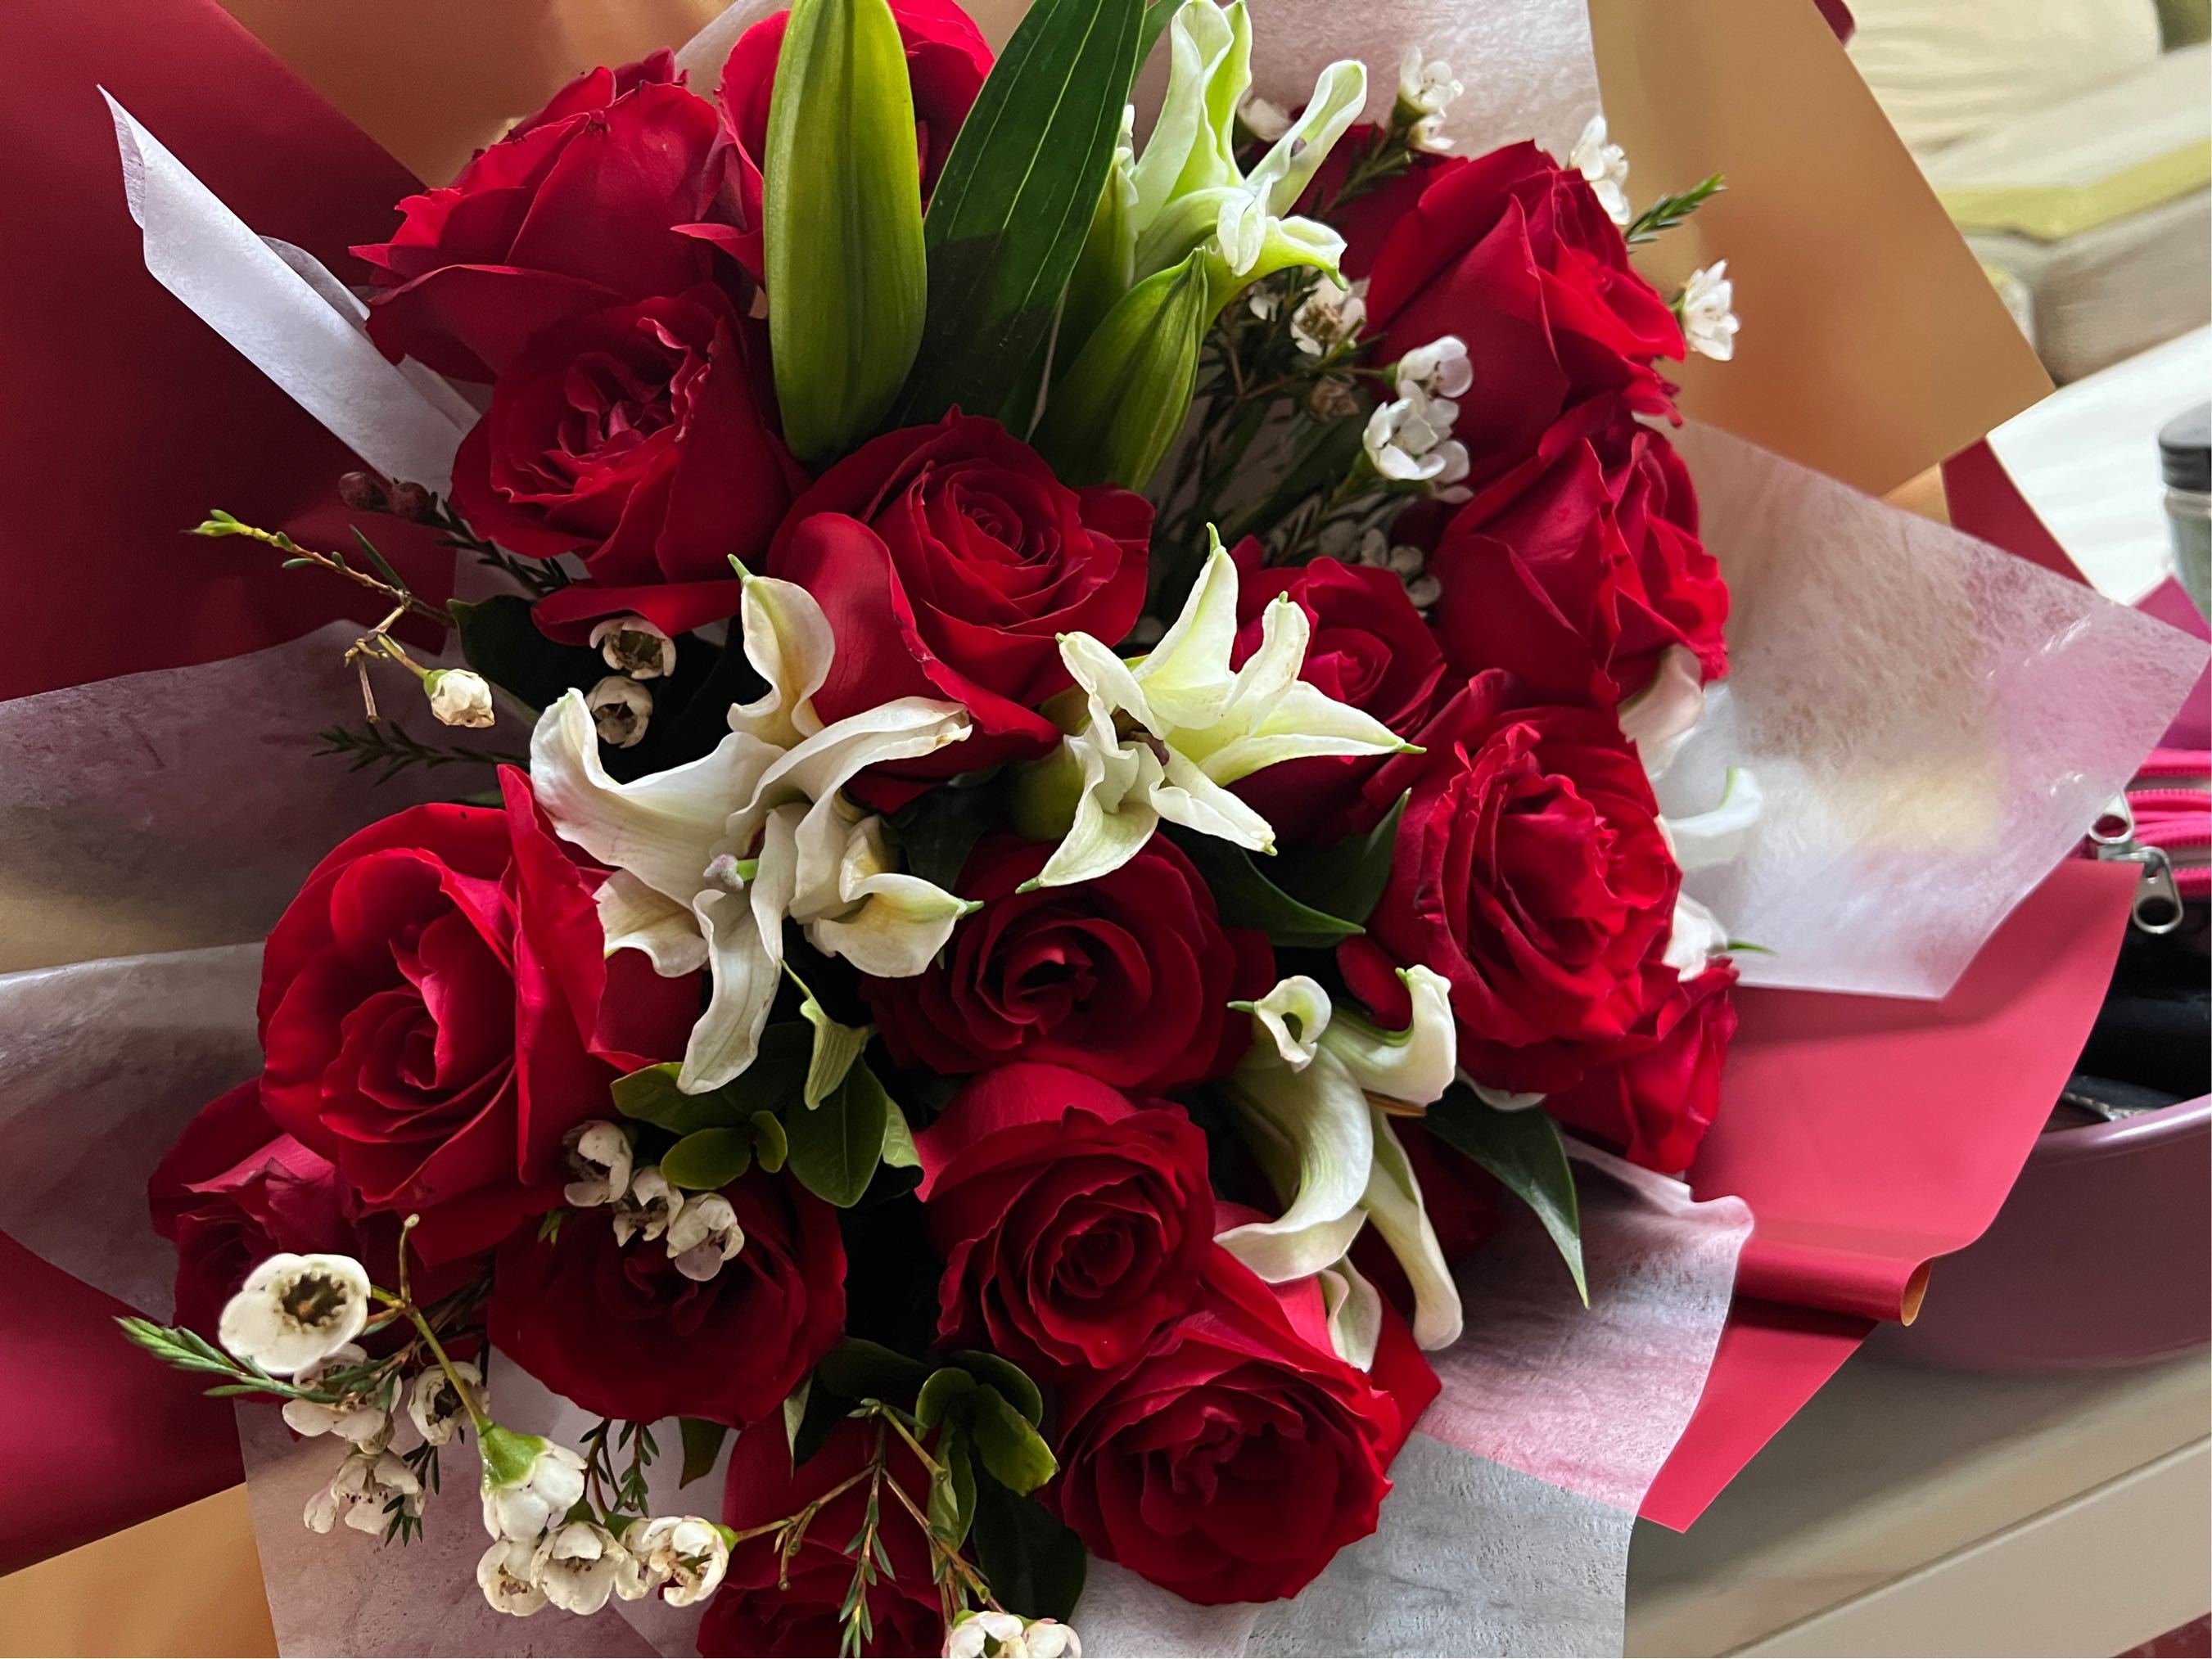 结婚纪念日上送给对方一束鲜花，这就是你们平淡婚姻中最美好的惊喜了